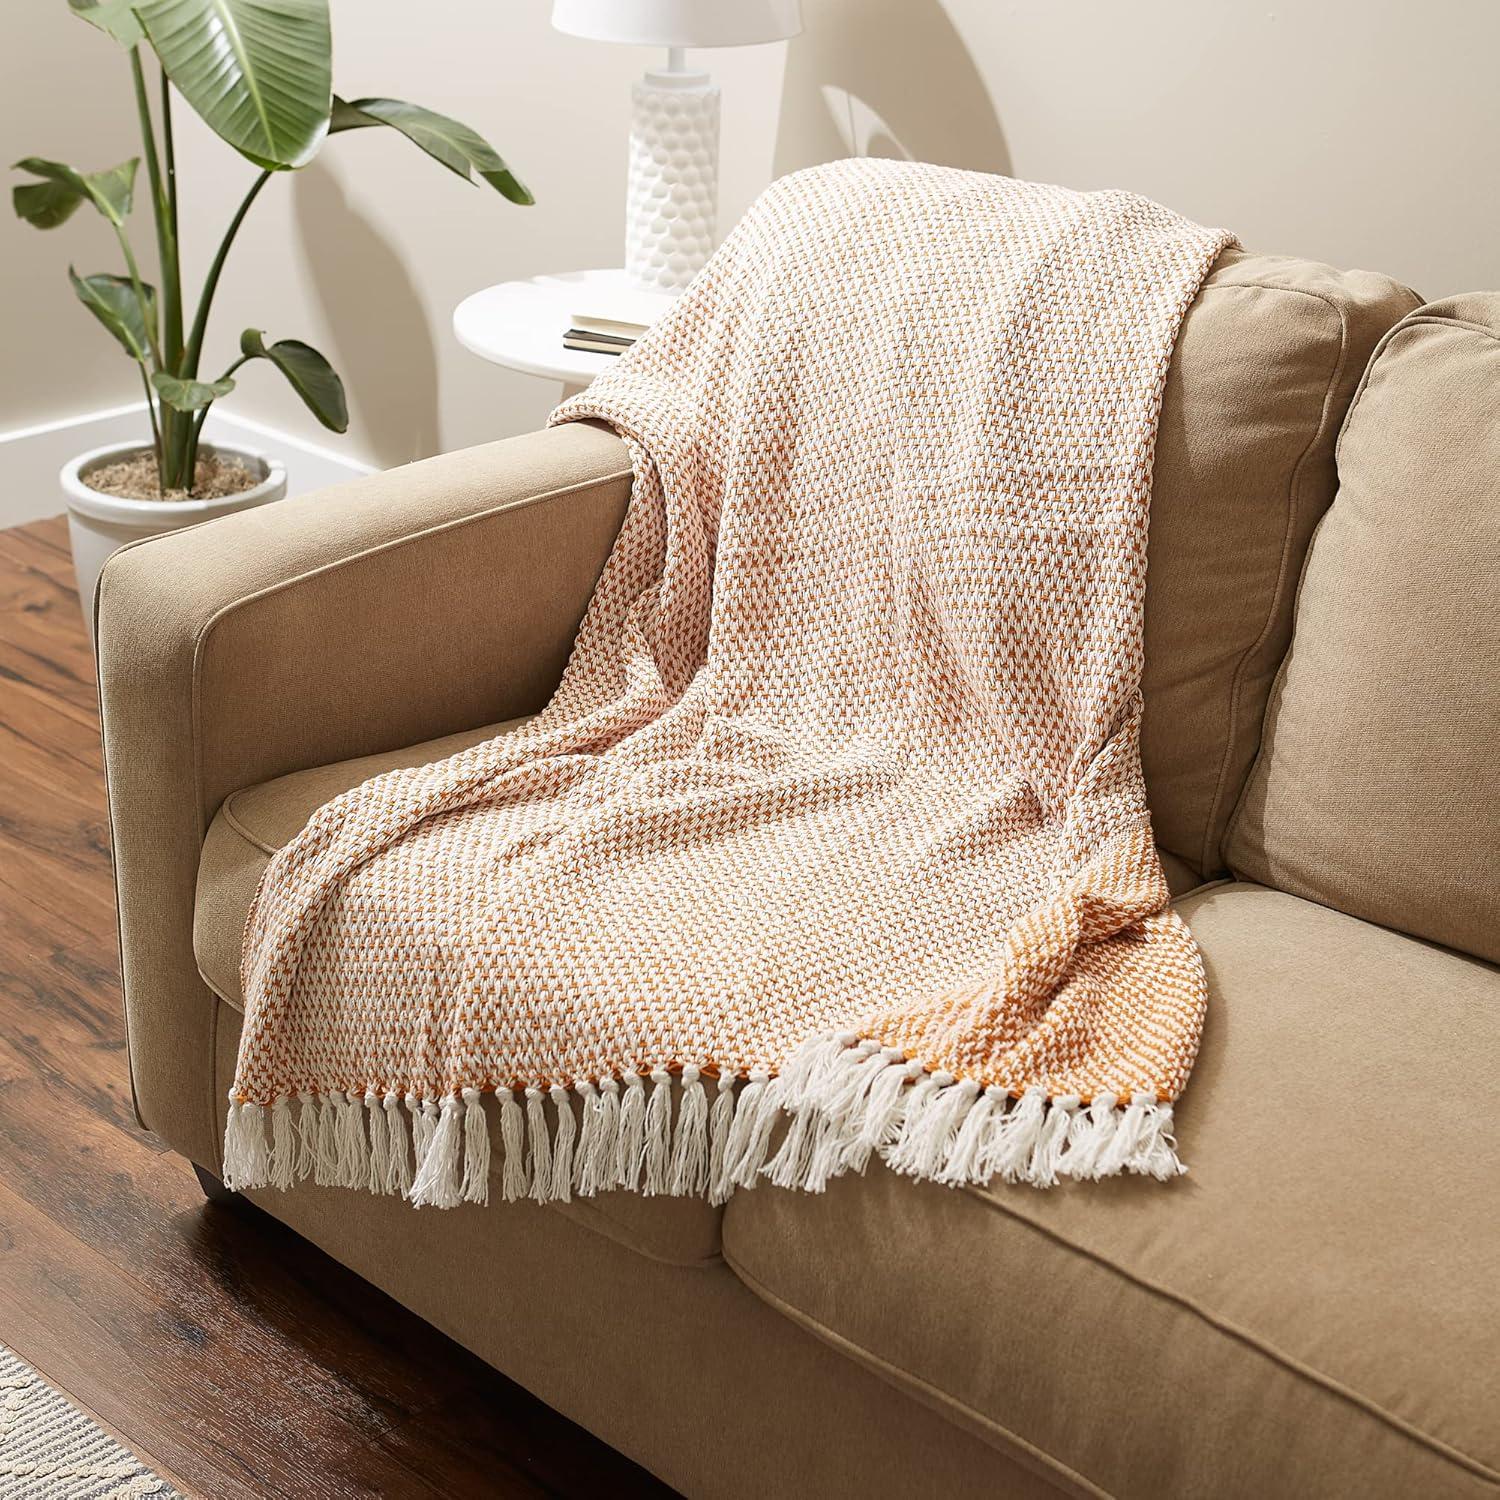 50"x60" Basketweave Cotton Throw Blanket - Pumpkin Spice